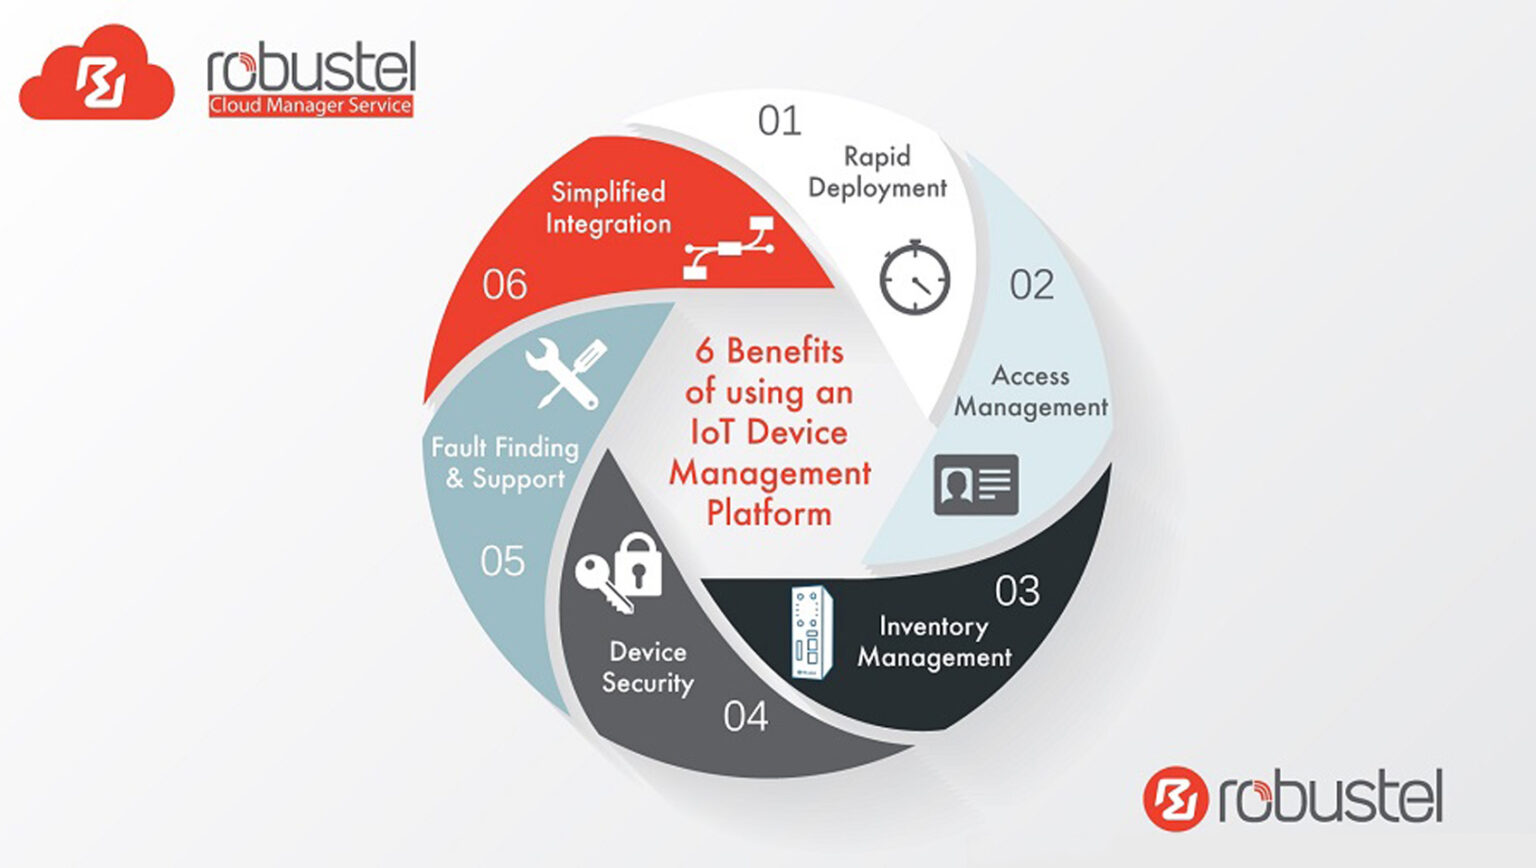 De 6 voordelen van het gebruik van een IoT Device Management Platform volgens Robustel